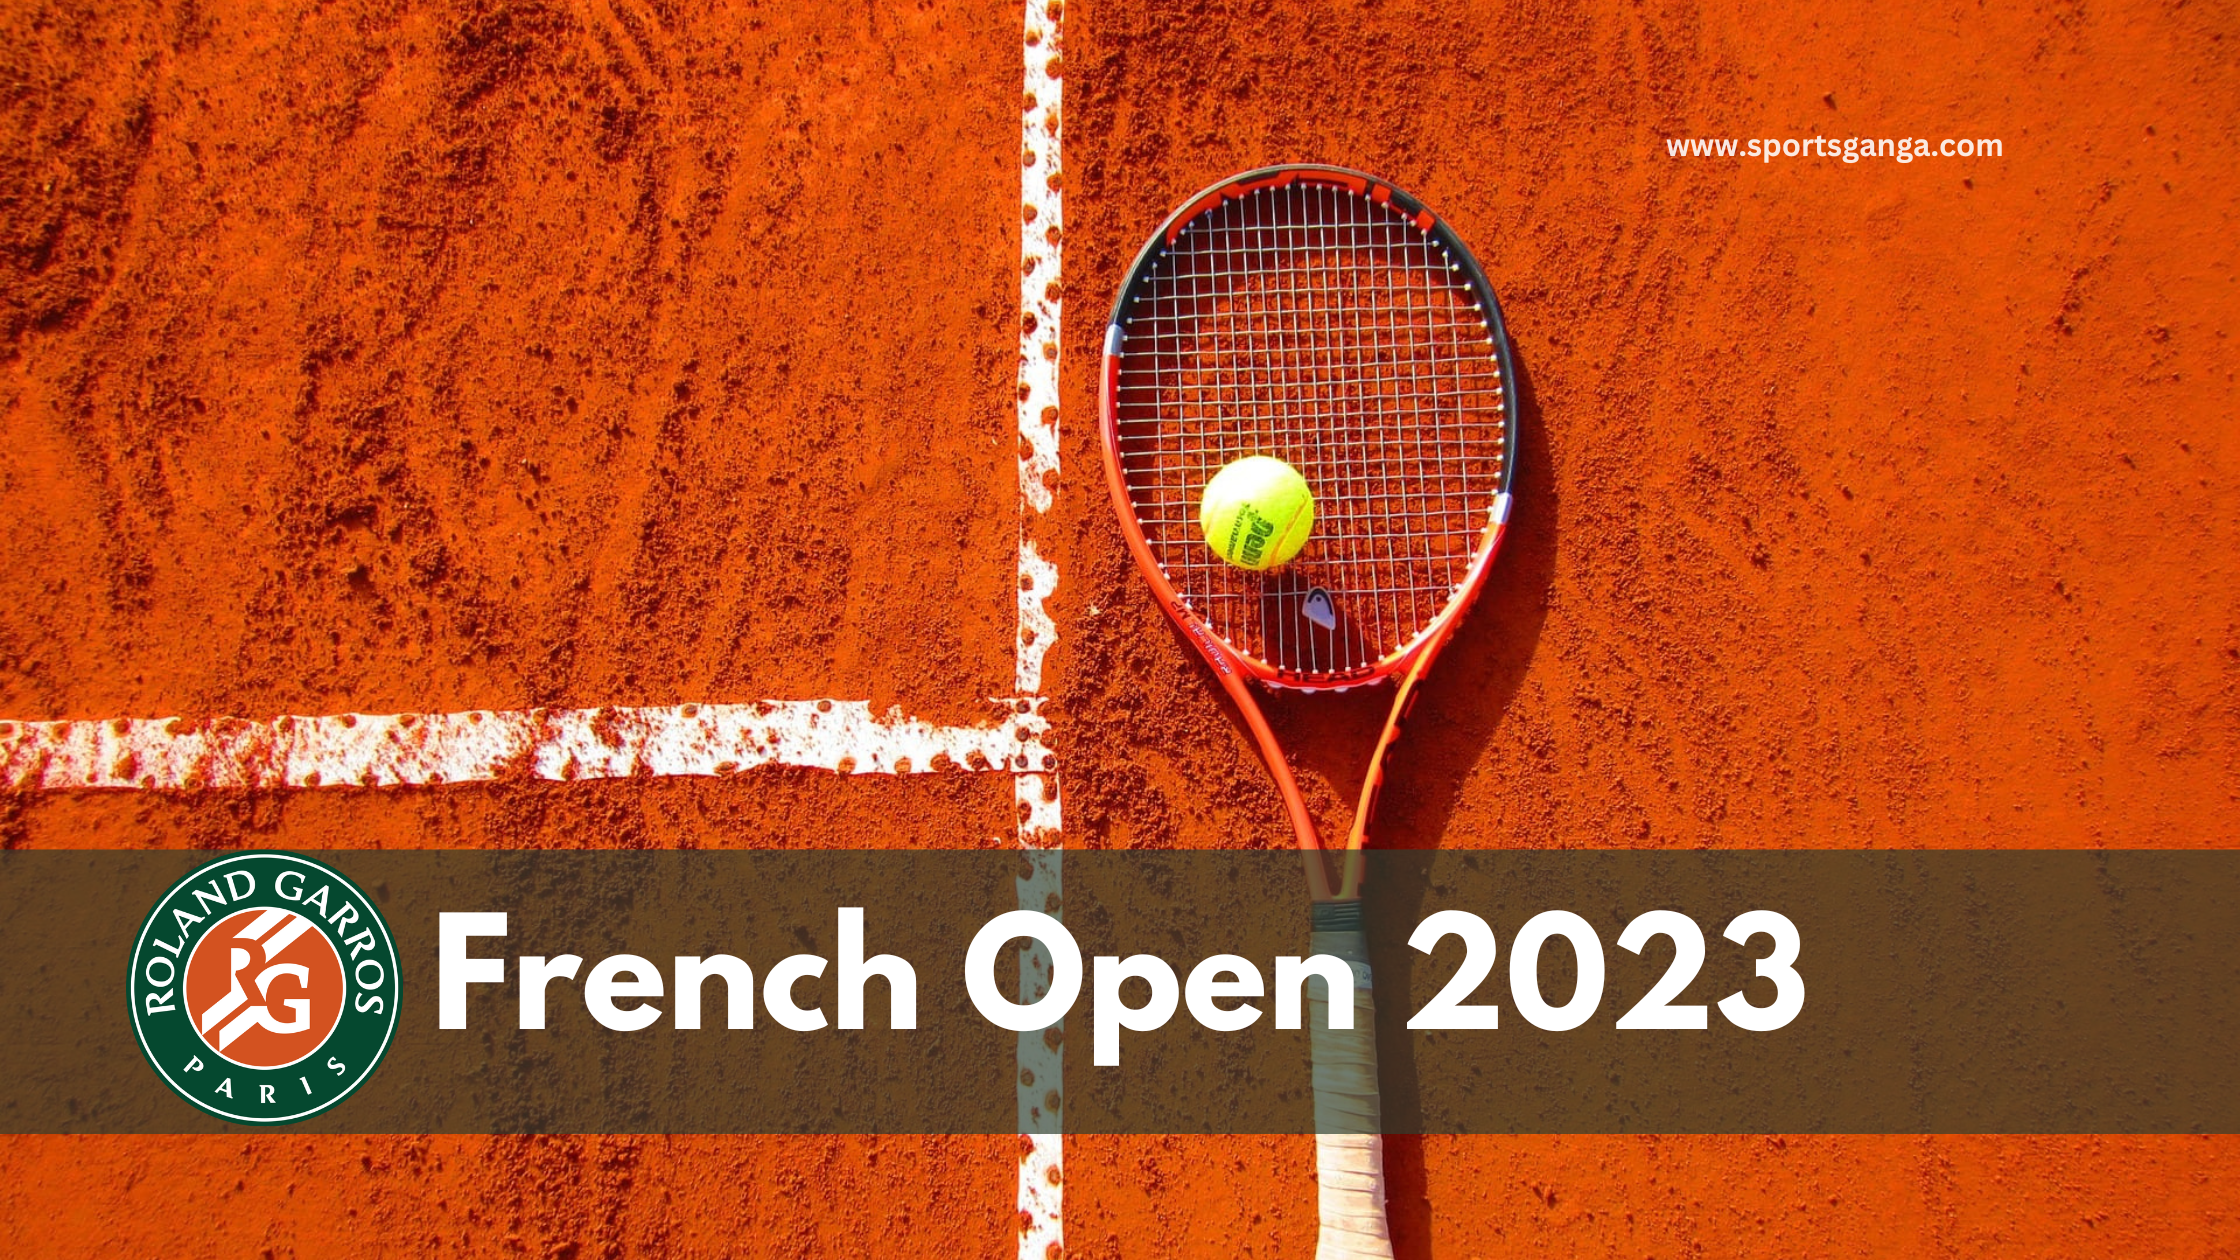 Roland-Garros - The 2023 Roland-Garros Tournament official site